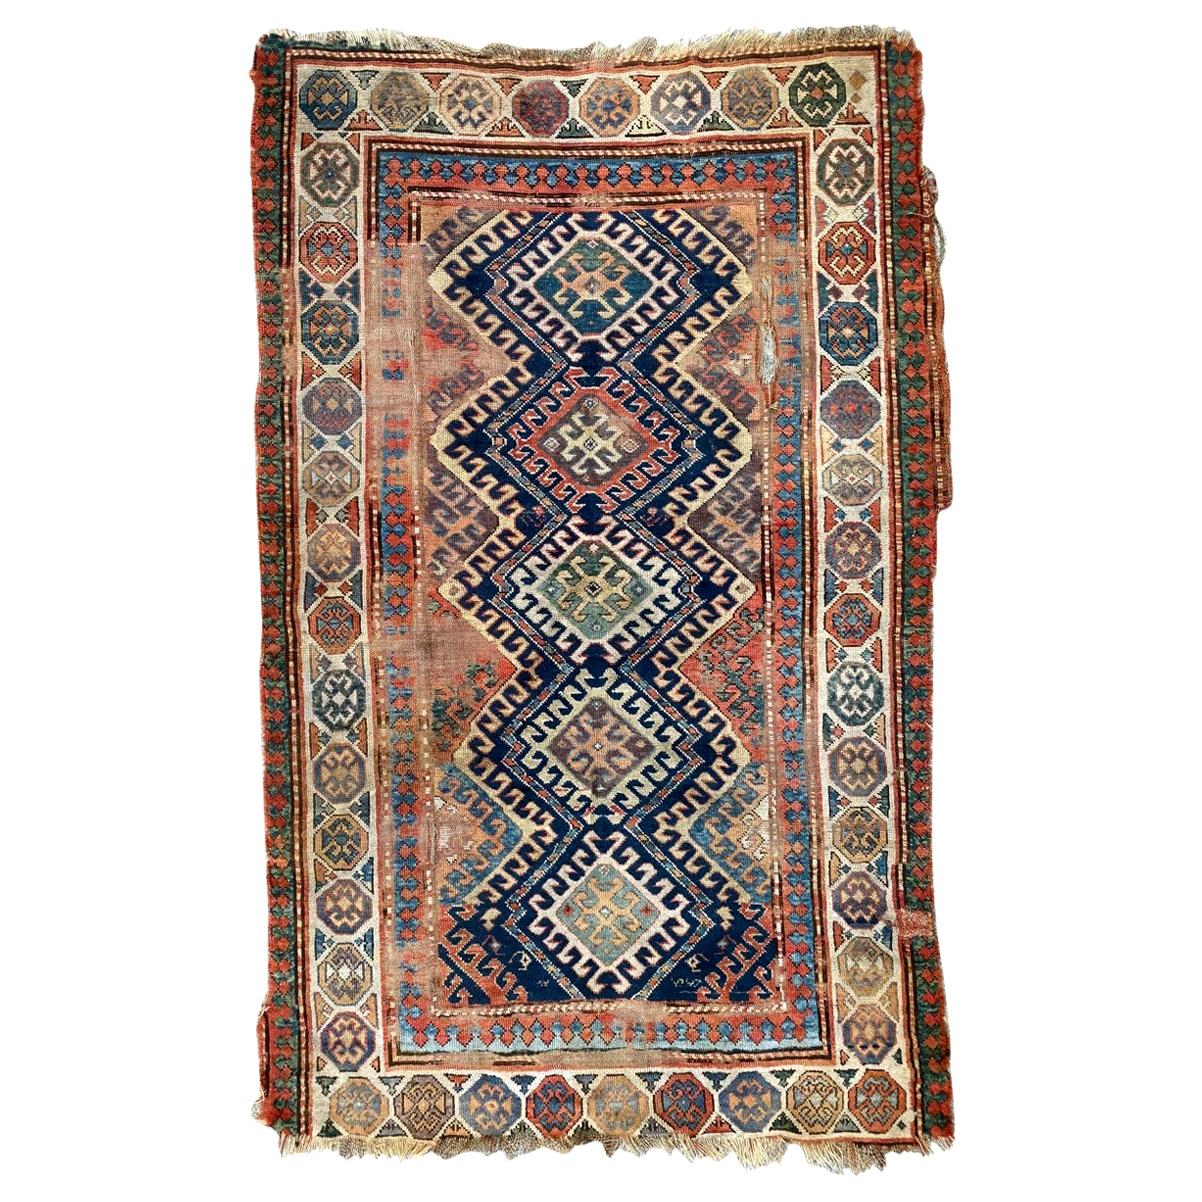 Bobyrug's Antique Distressed Kaukasischer Kazak-Teppich